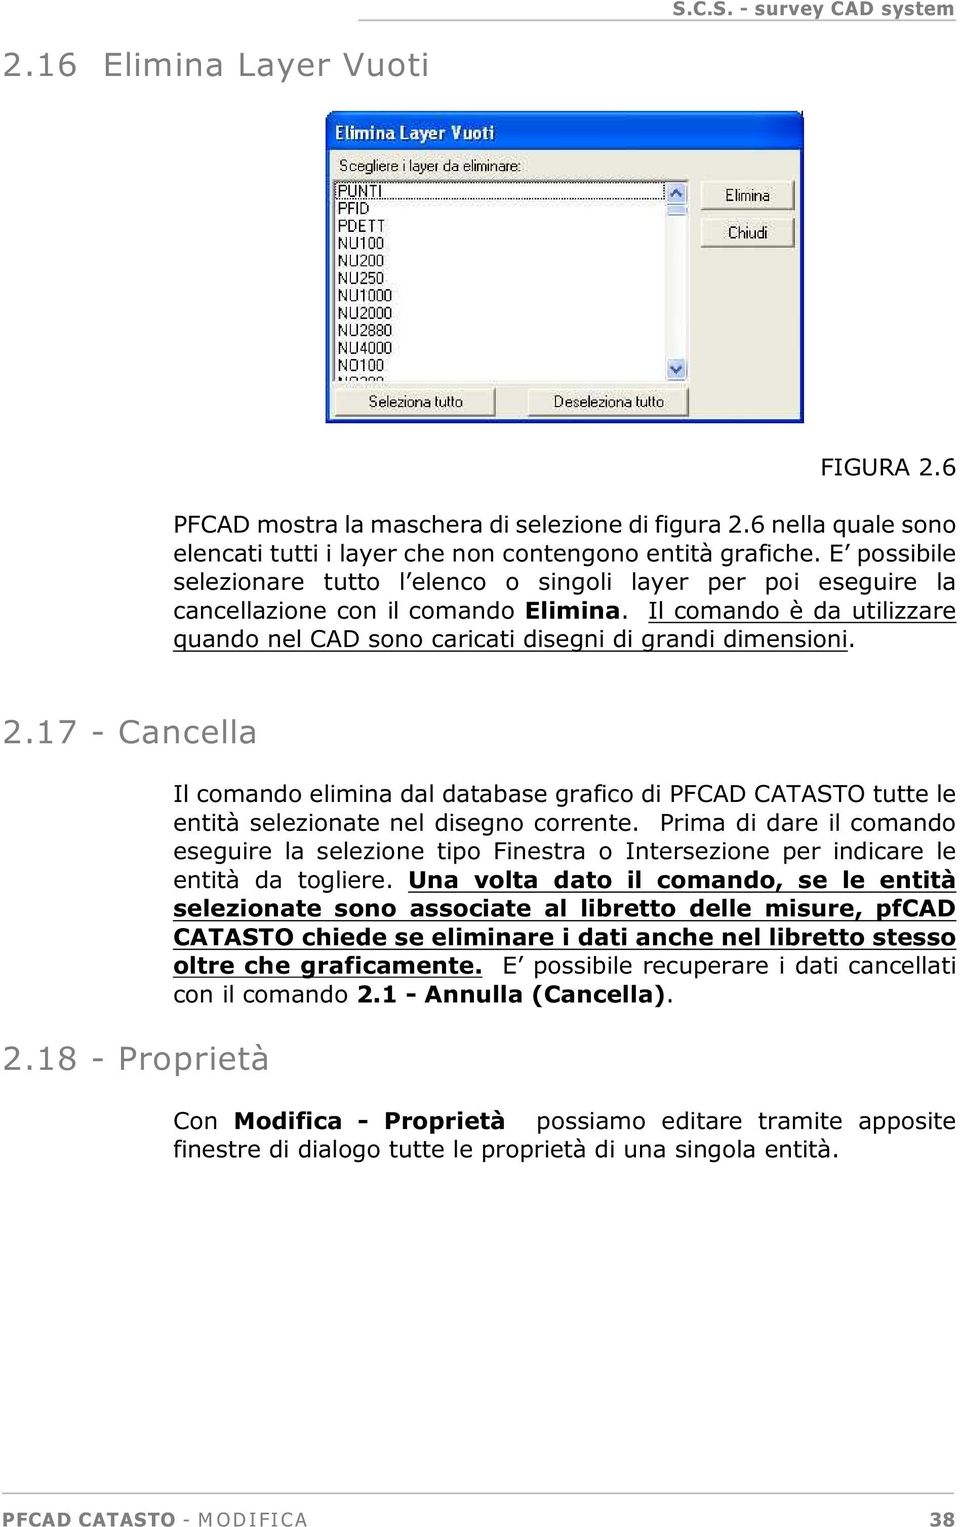 2.17 - Cancella 2.18 - Proprietà Il comando elimina dal database grafico di PFCAD CATASTO tutte le entità selezionate nel disegno corrente.